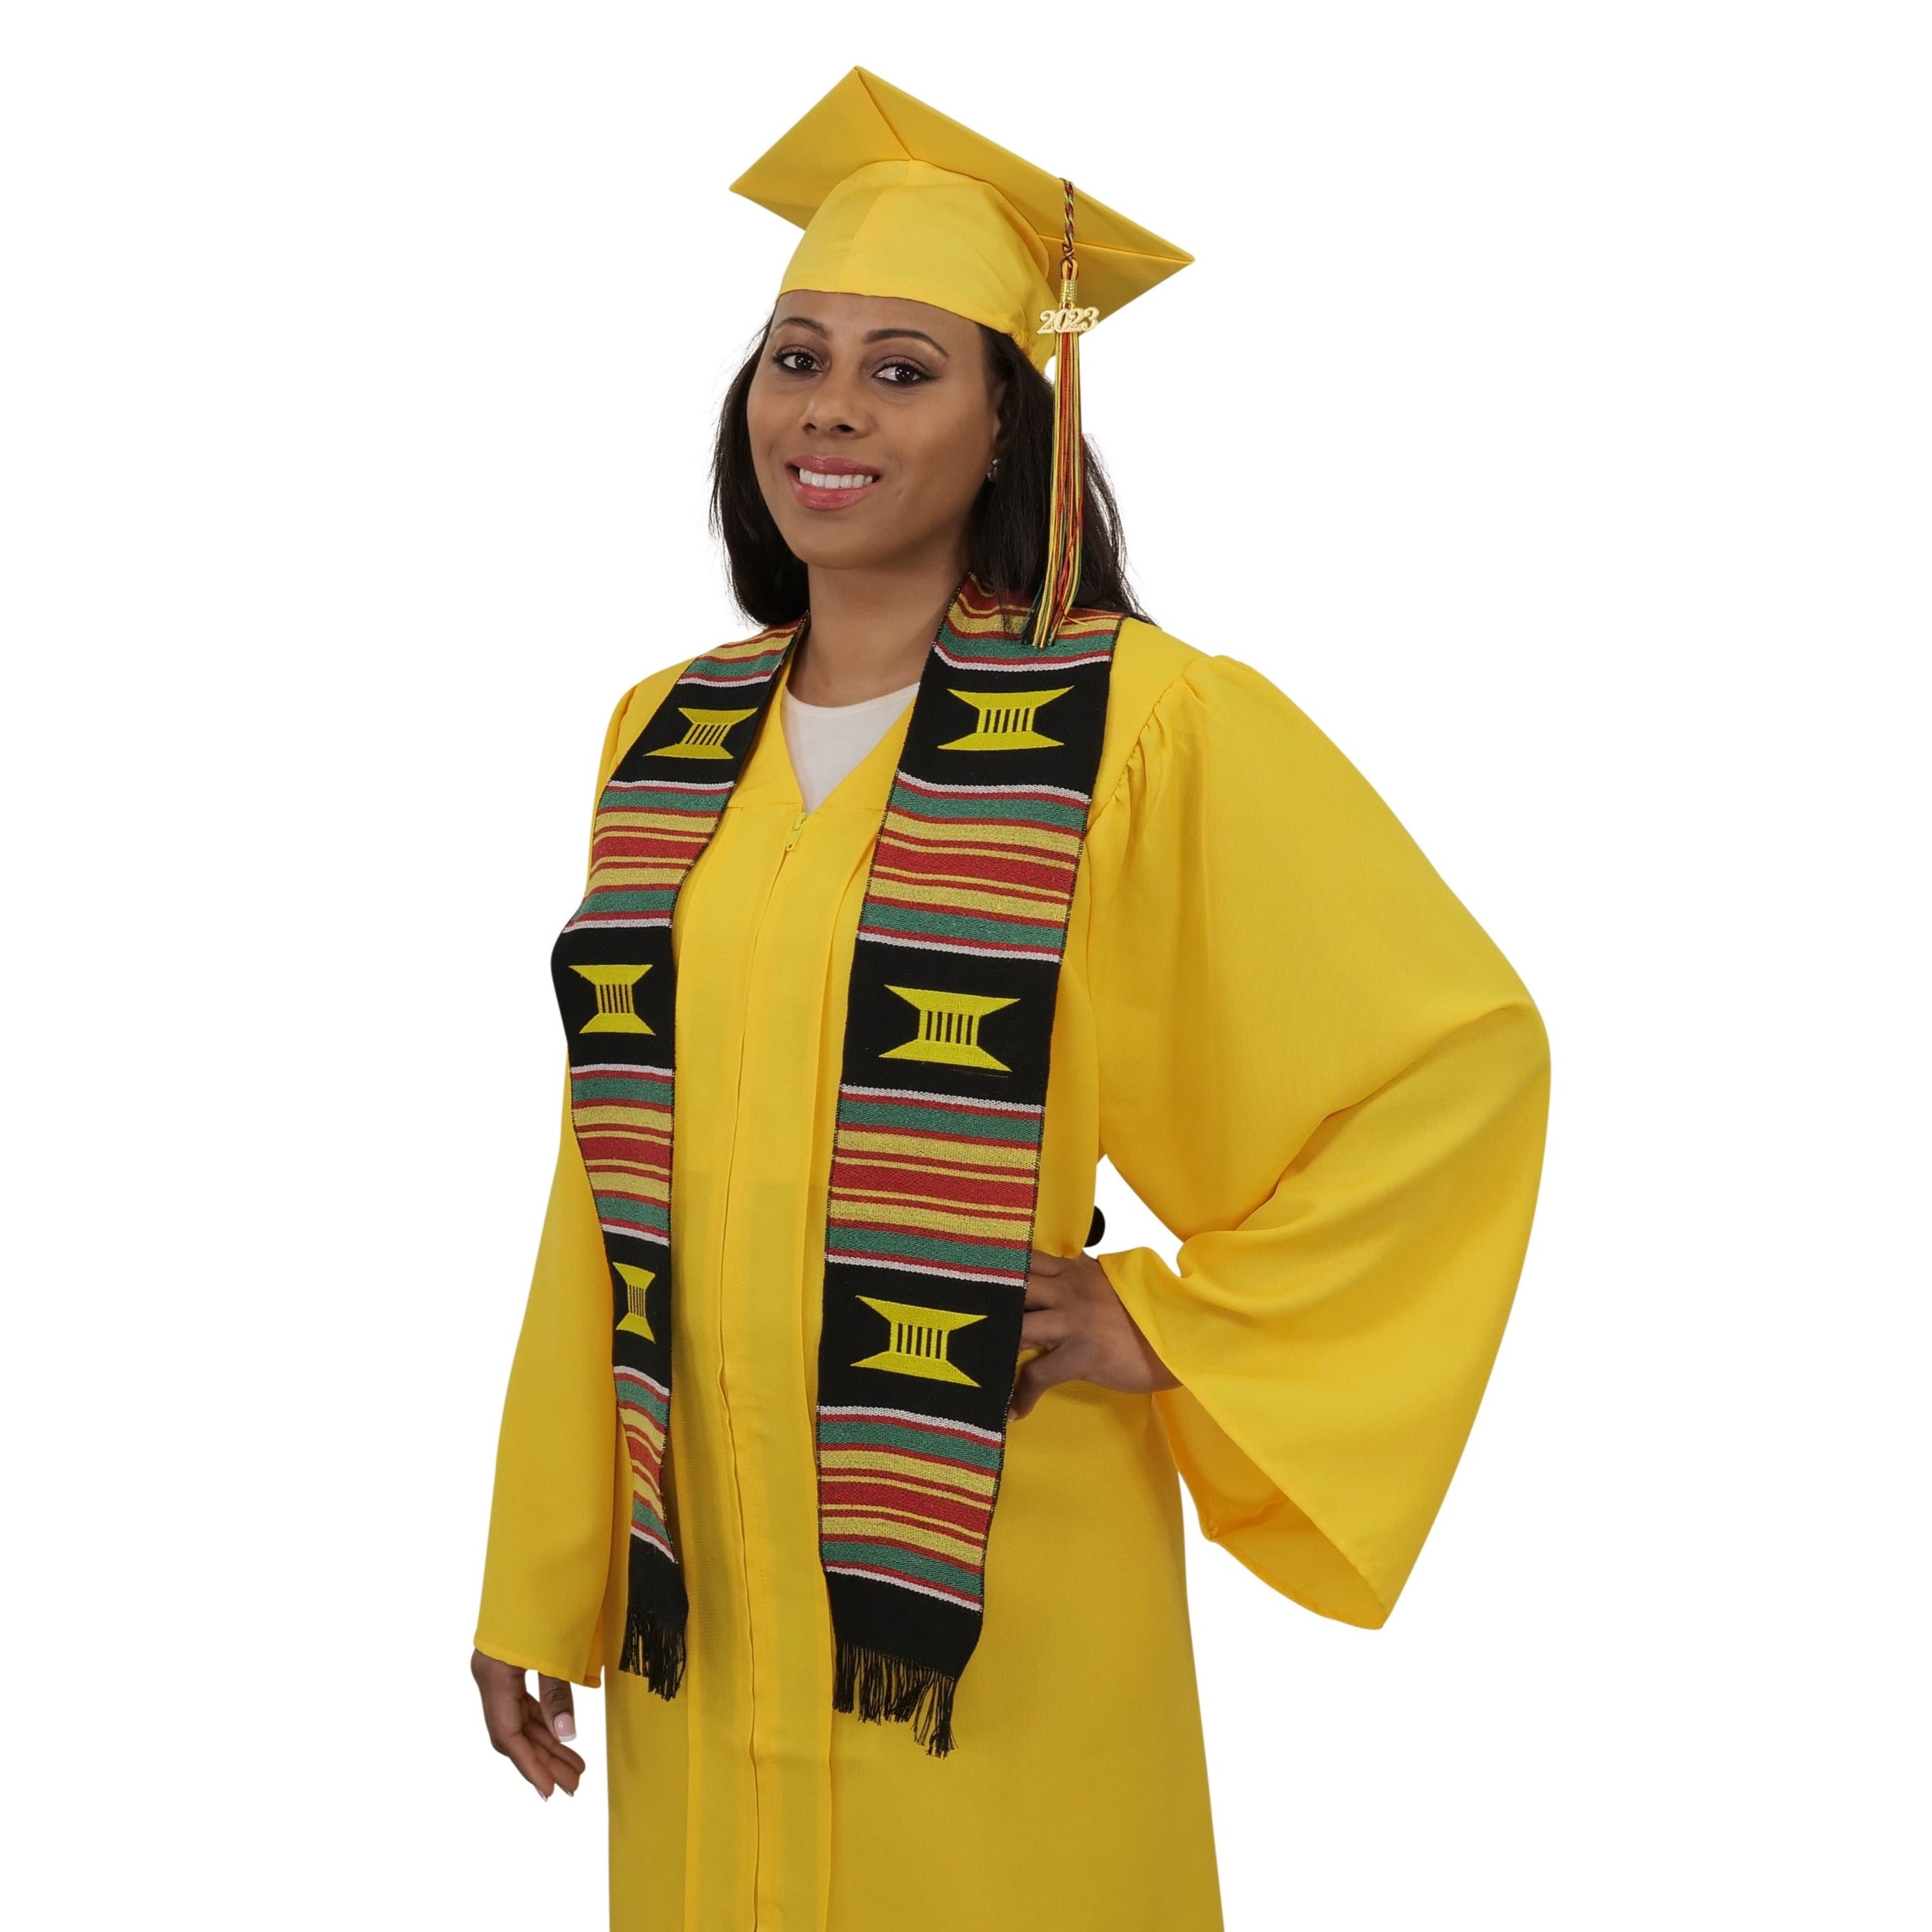 Graduation / Cap & Gown Information